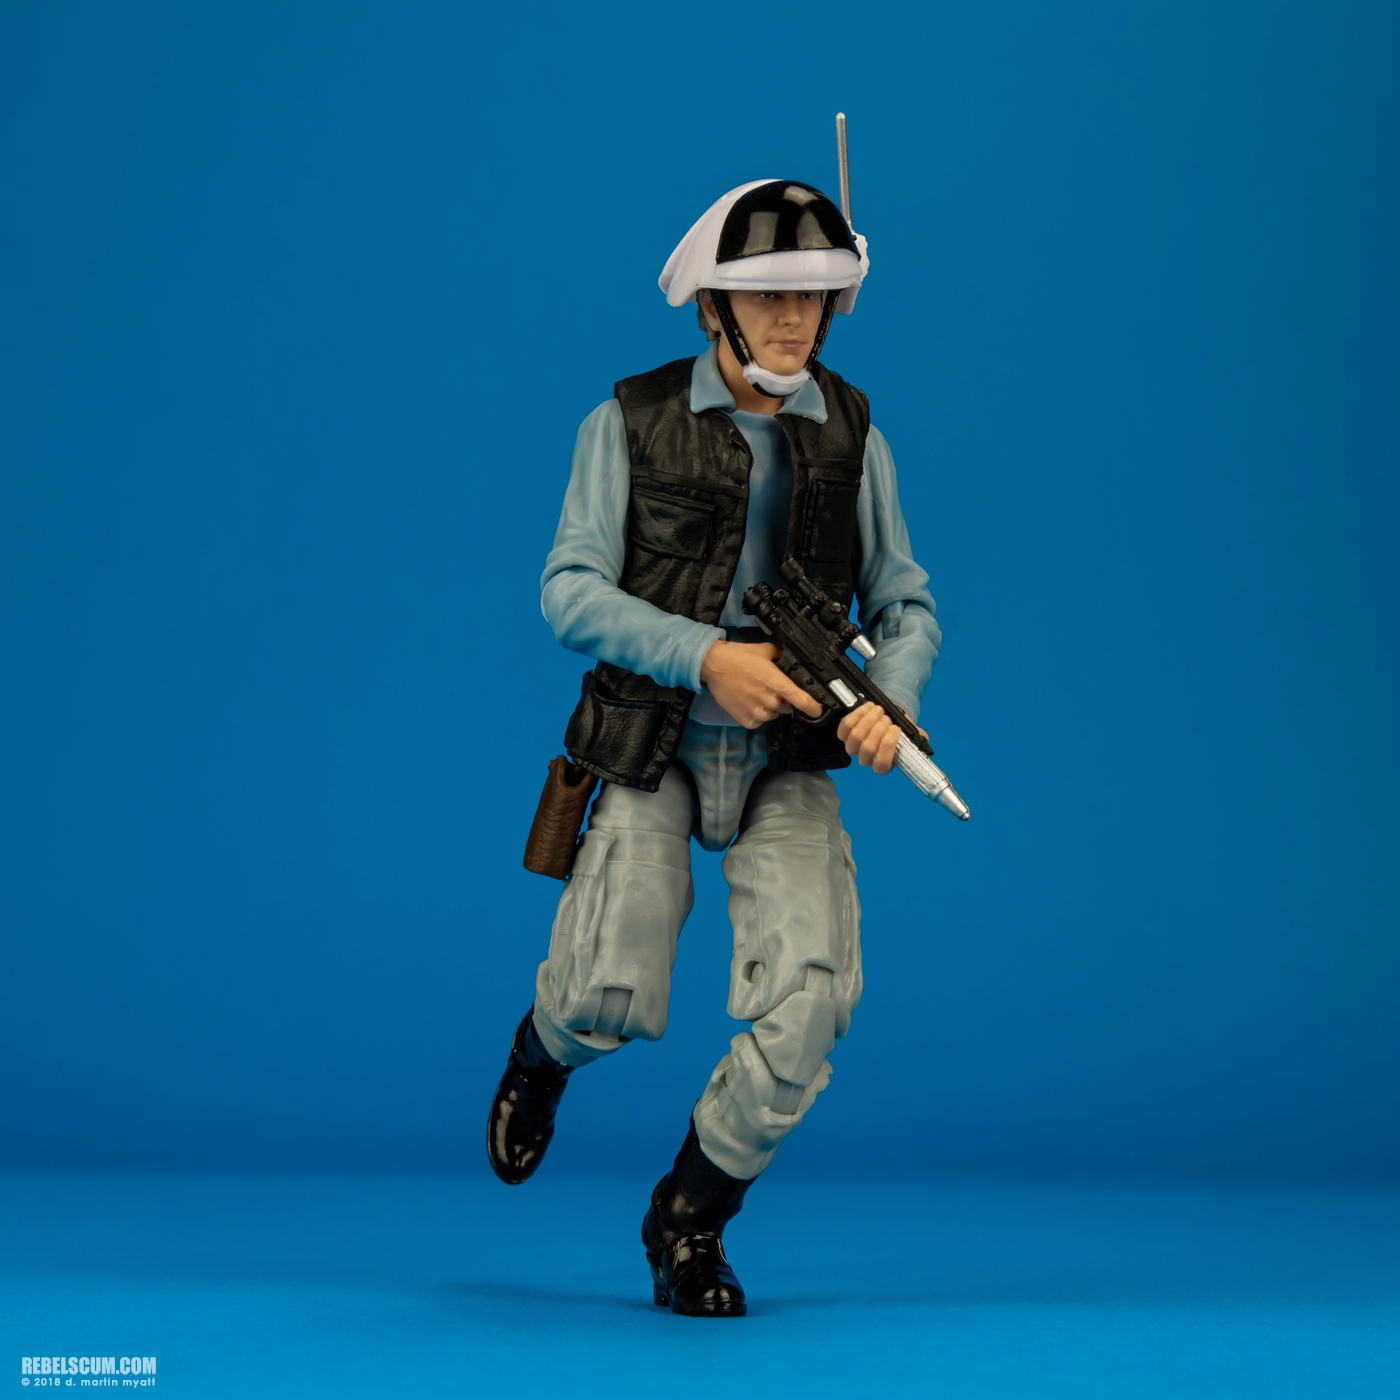 Rebel_Trooper-69-Star-Wars-The-Black-Series-6-inch-Hasbro-011.jpg